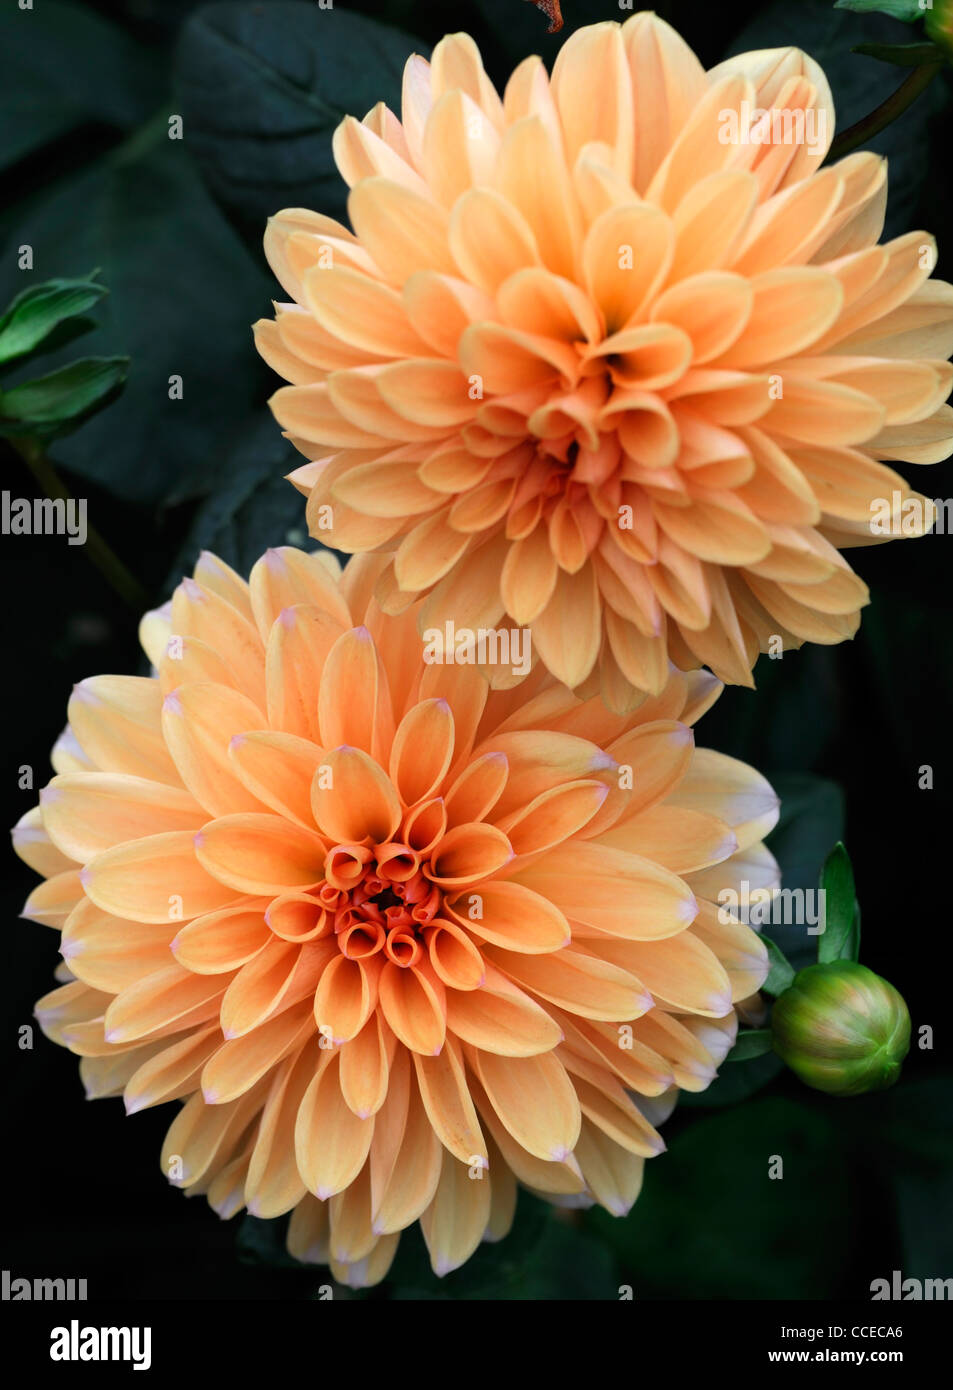 Dahlia anne elise fleur orange fleur plante fleurs portraits gros plan fleurs décoratives fleurs fleurs vivaces Banque D'Images